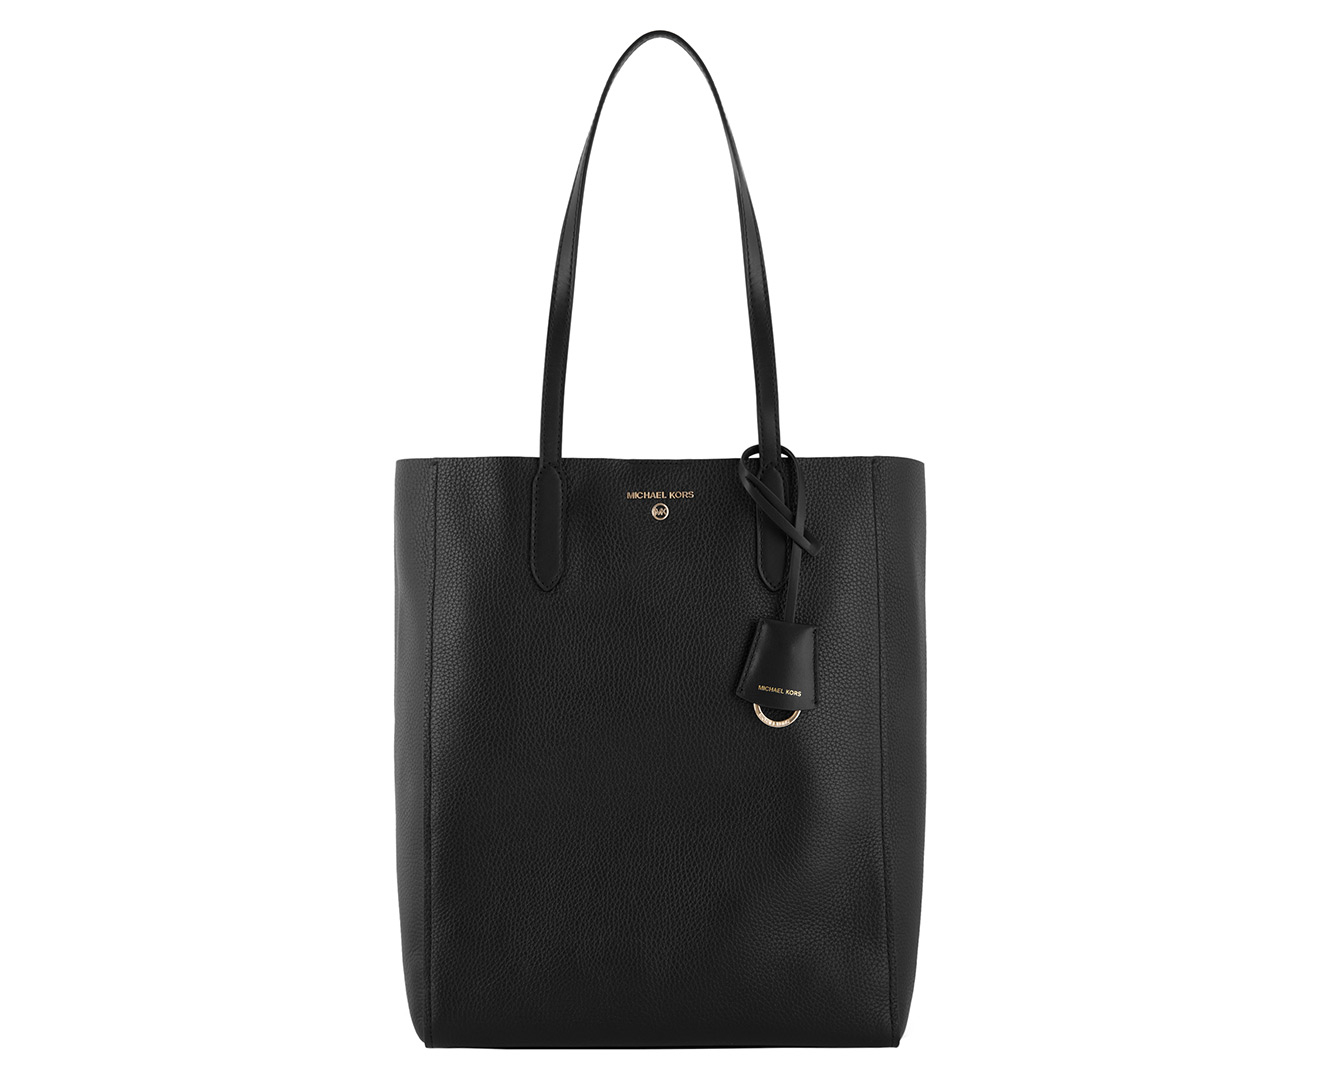 Michael Kors Sinclair Large Shopper Tote Bag - Black | Catch.com.au